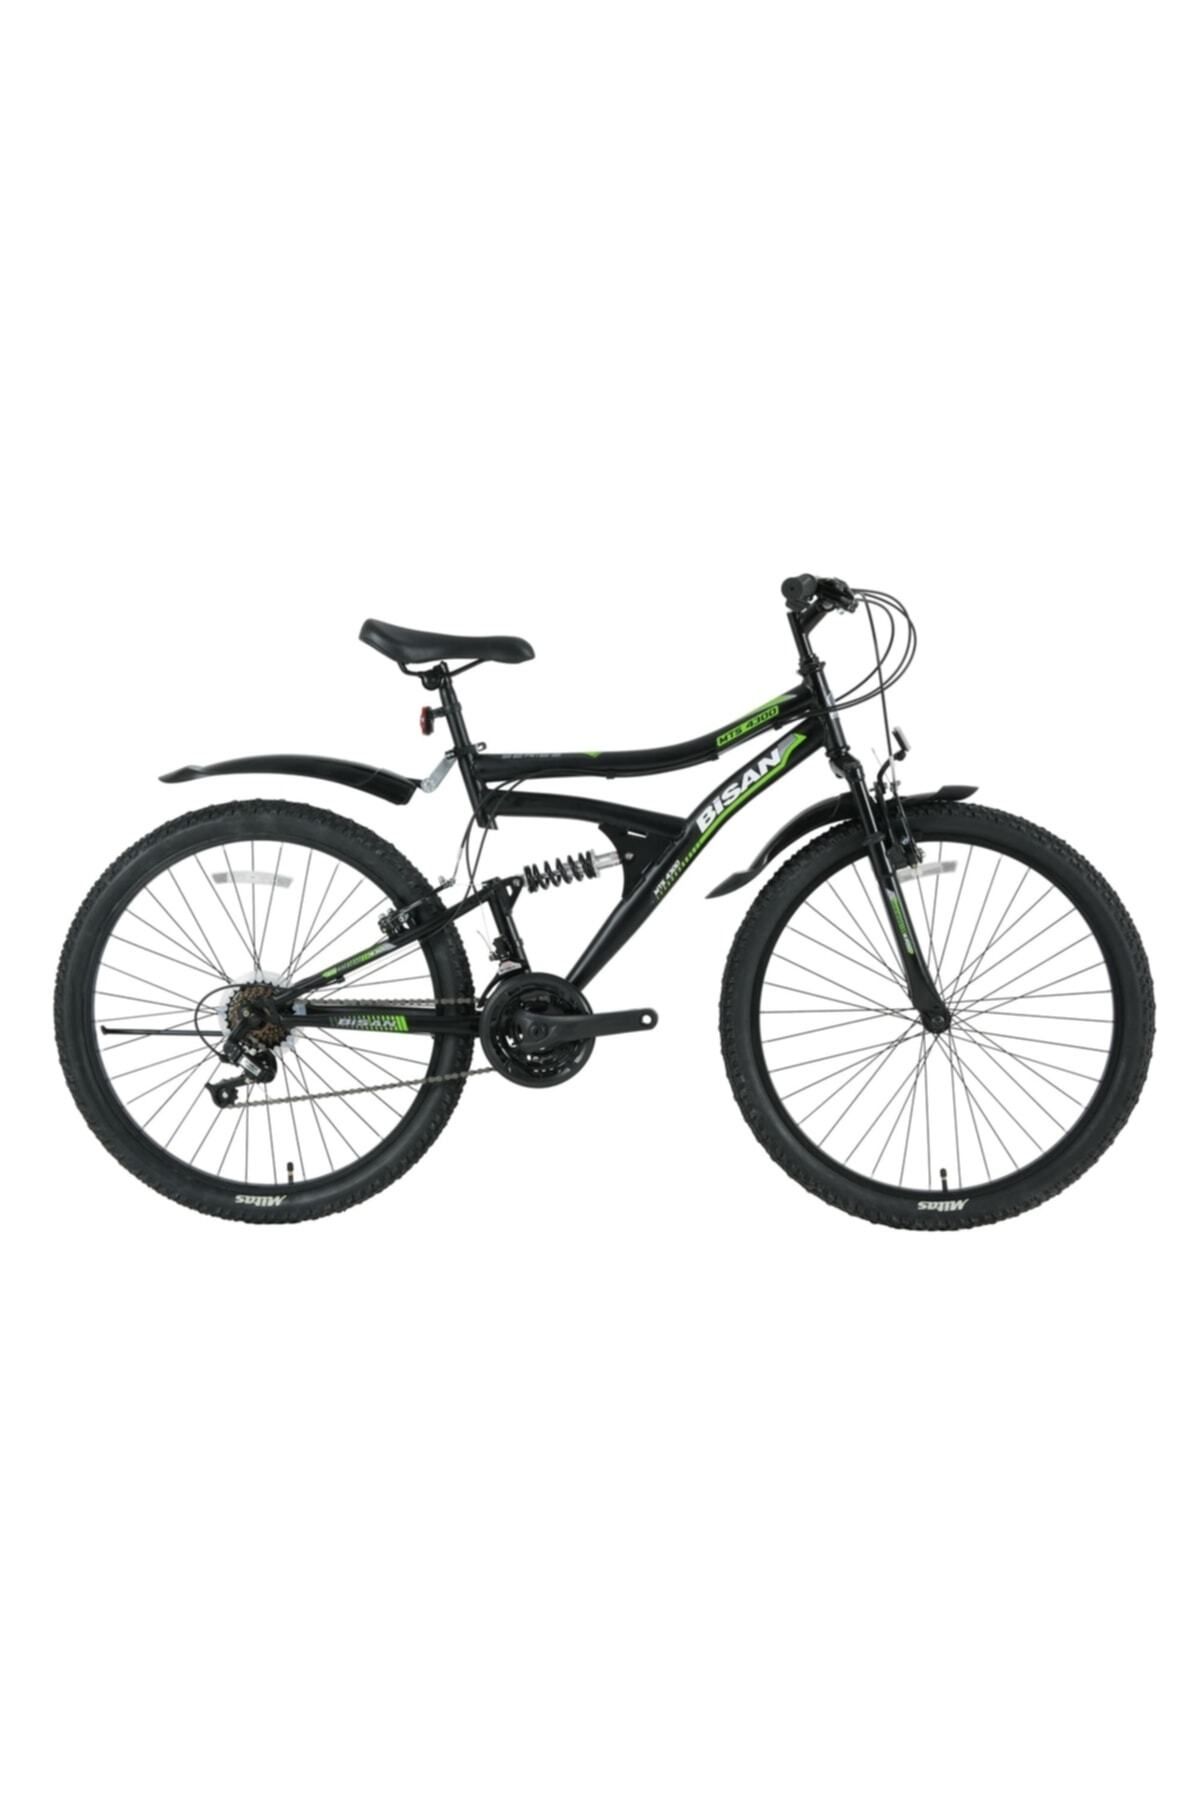 Bisan Mts 4300 26 Jant 40 Cm 16-17 Cm Kadro Bisiklet Mat Siyah - Yeşil